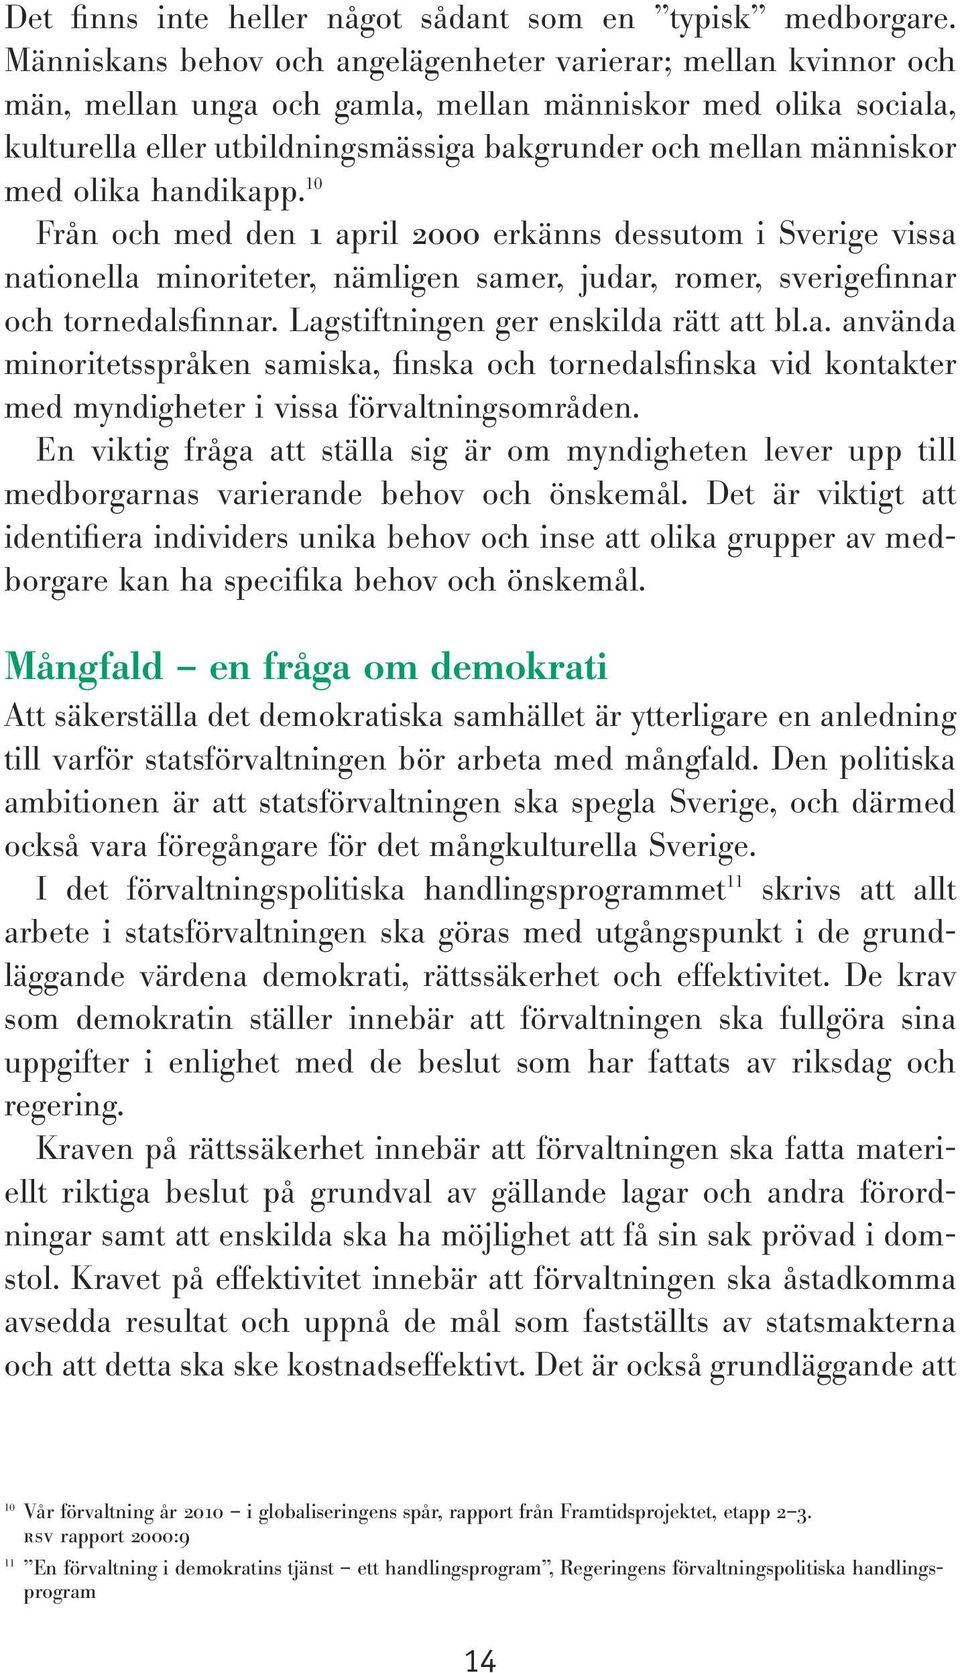 med olika handikapp. 10 Från och med den 1 april 2000 erkänns dessutom i Sverige vissa nationella minoriteter, nämligen samer, judar, romer, sverigefinnar och tornedalsfinnar.